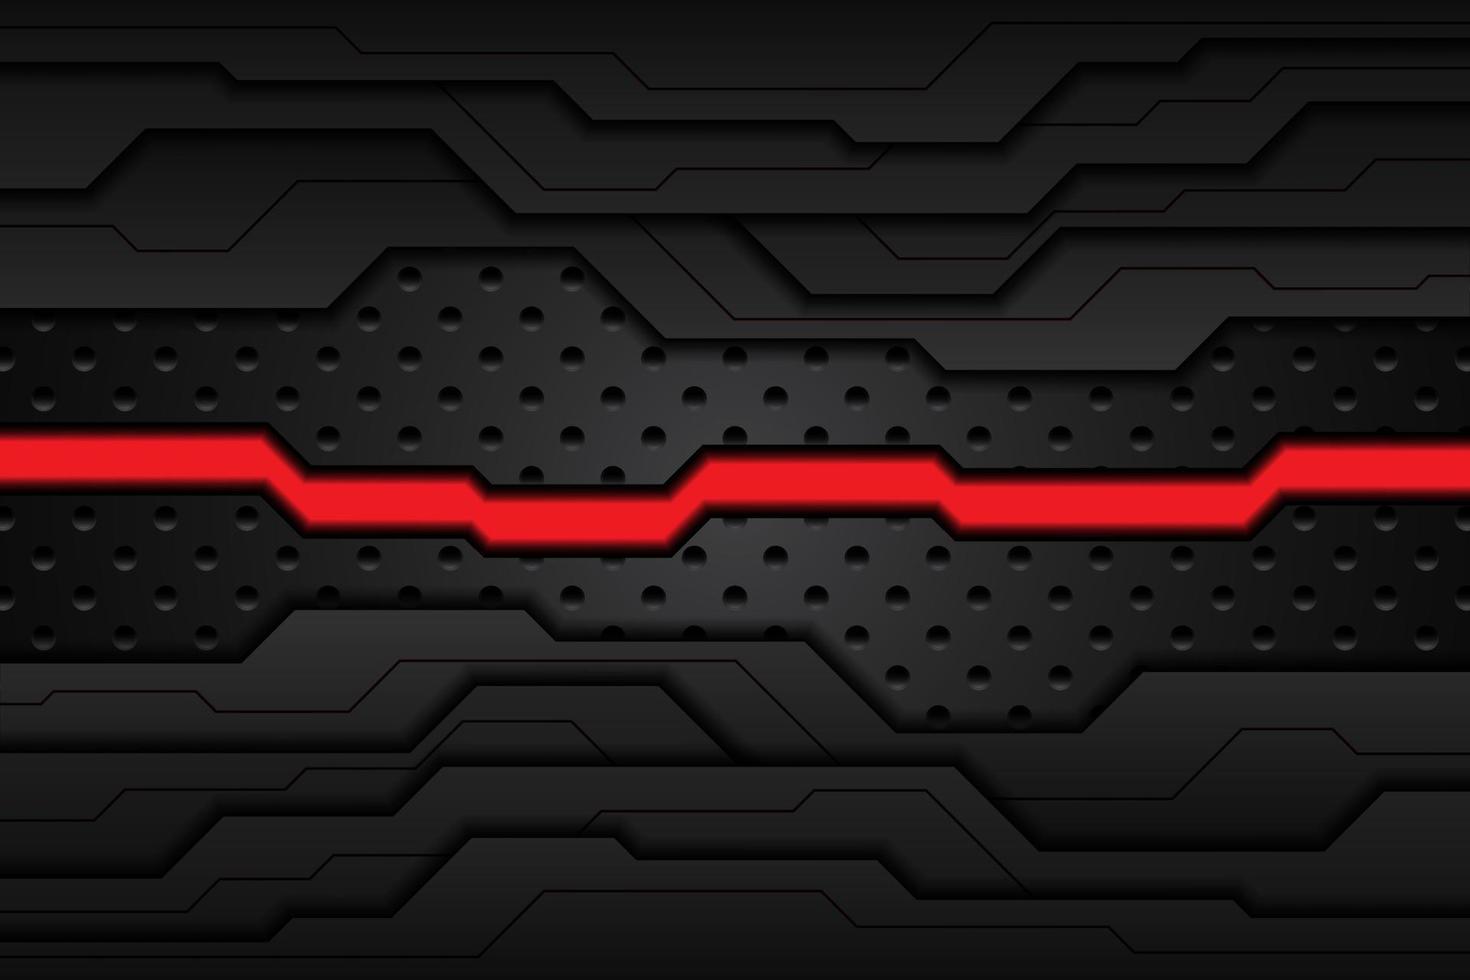 placa de metal negro y rayas rojas en contraste sobre malla de acero. fondo de diseño de tecnología moderna de plantilla. ilustración vectorial vector